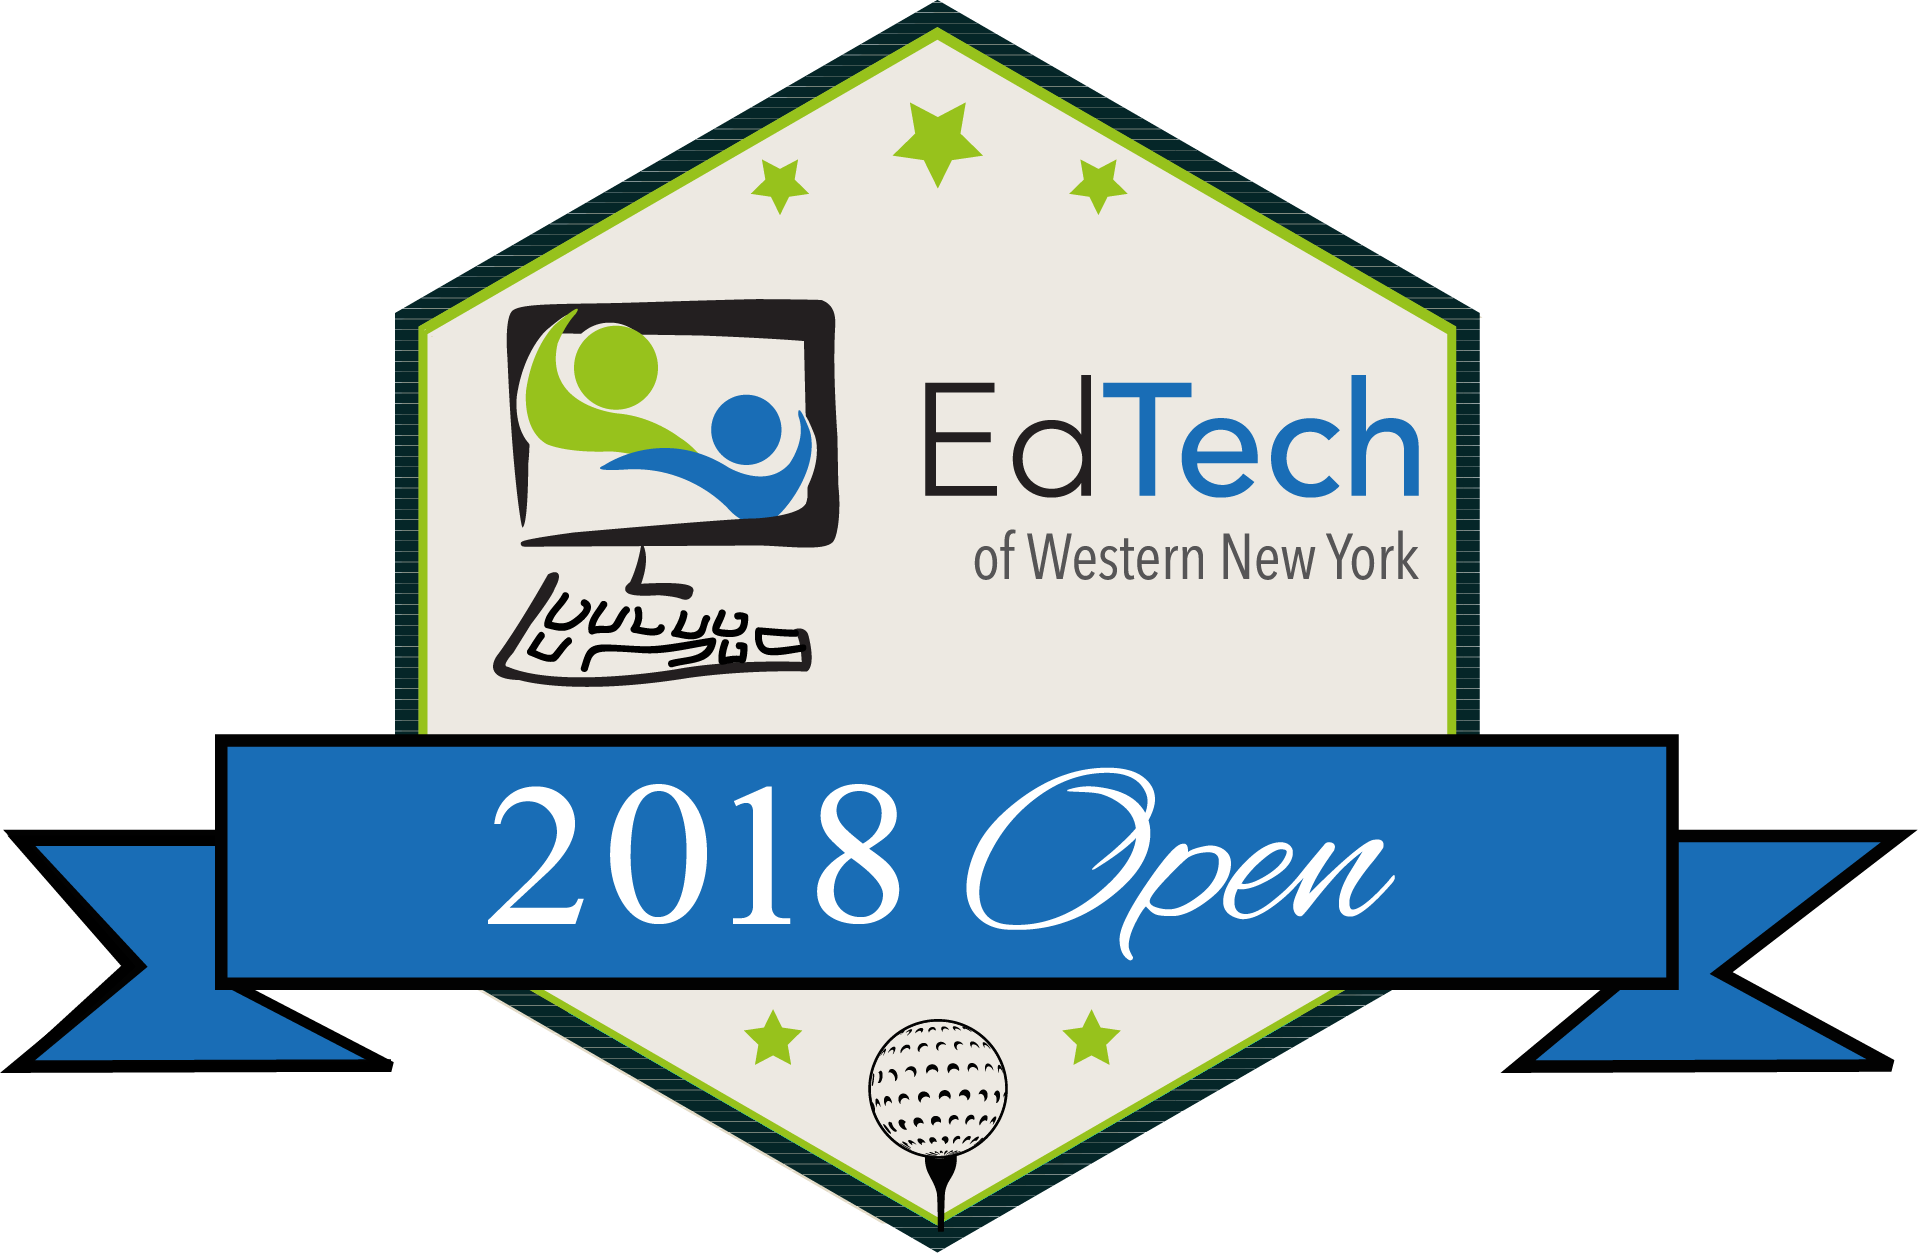 Ed Tech Open 2018